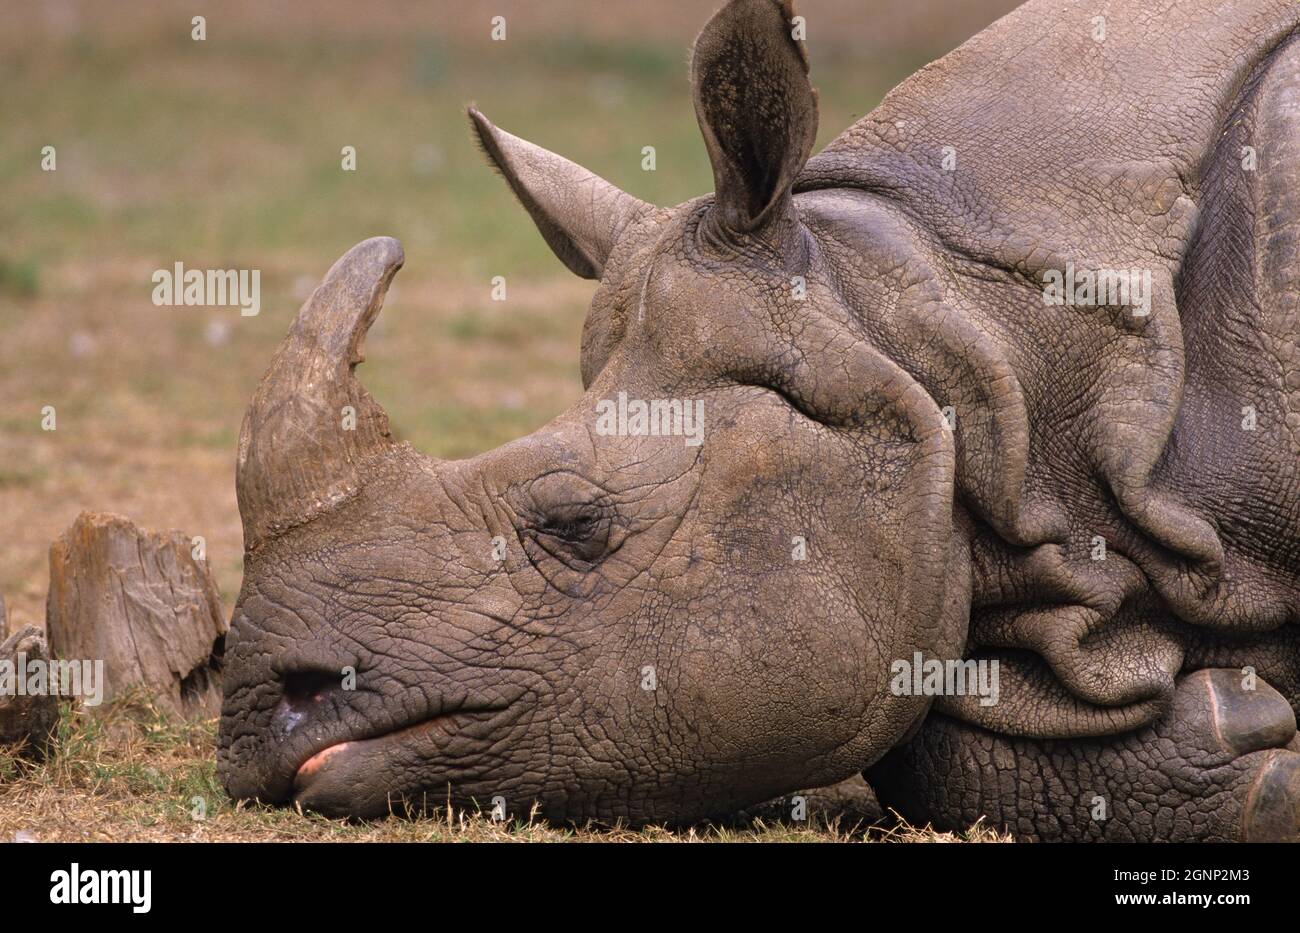 Rhinocéros indiens (Rhinoceros unicornis), Zoo de Delhi, Inde Banque D'Images